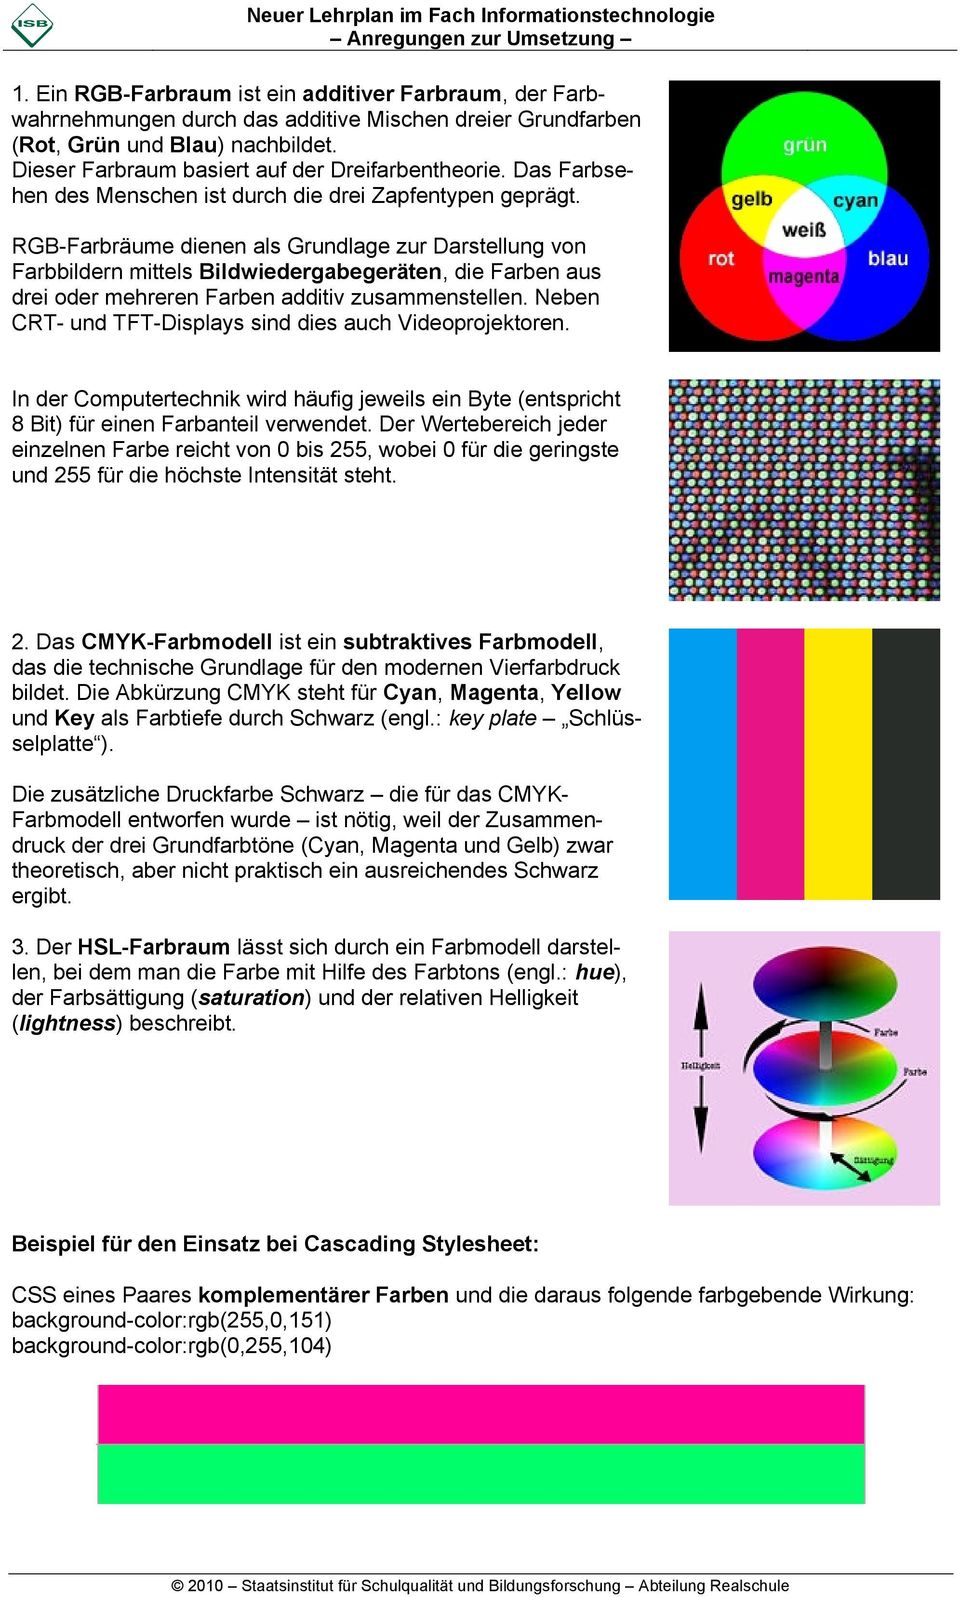 RGB-Farbräume dienen als Grundlage zur Darstellung von Farbbildern mittels Bildwiedergabegeräten, die Farben aus drei oder mehreren Farben additiv zusammenstellen.